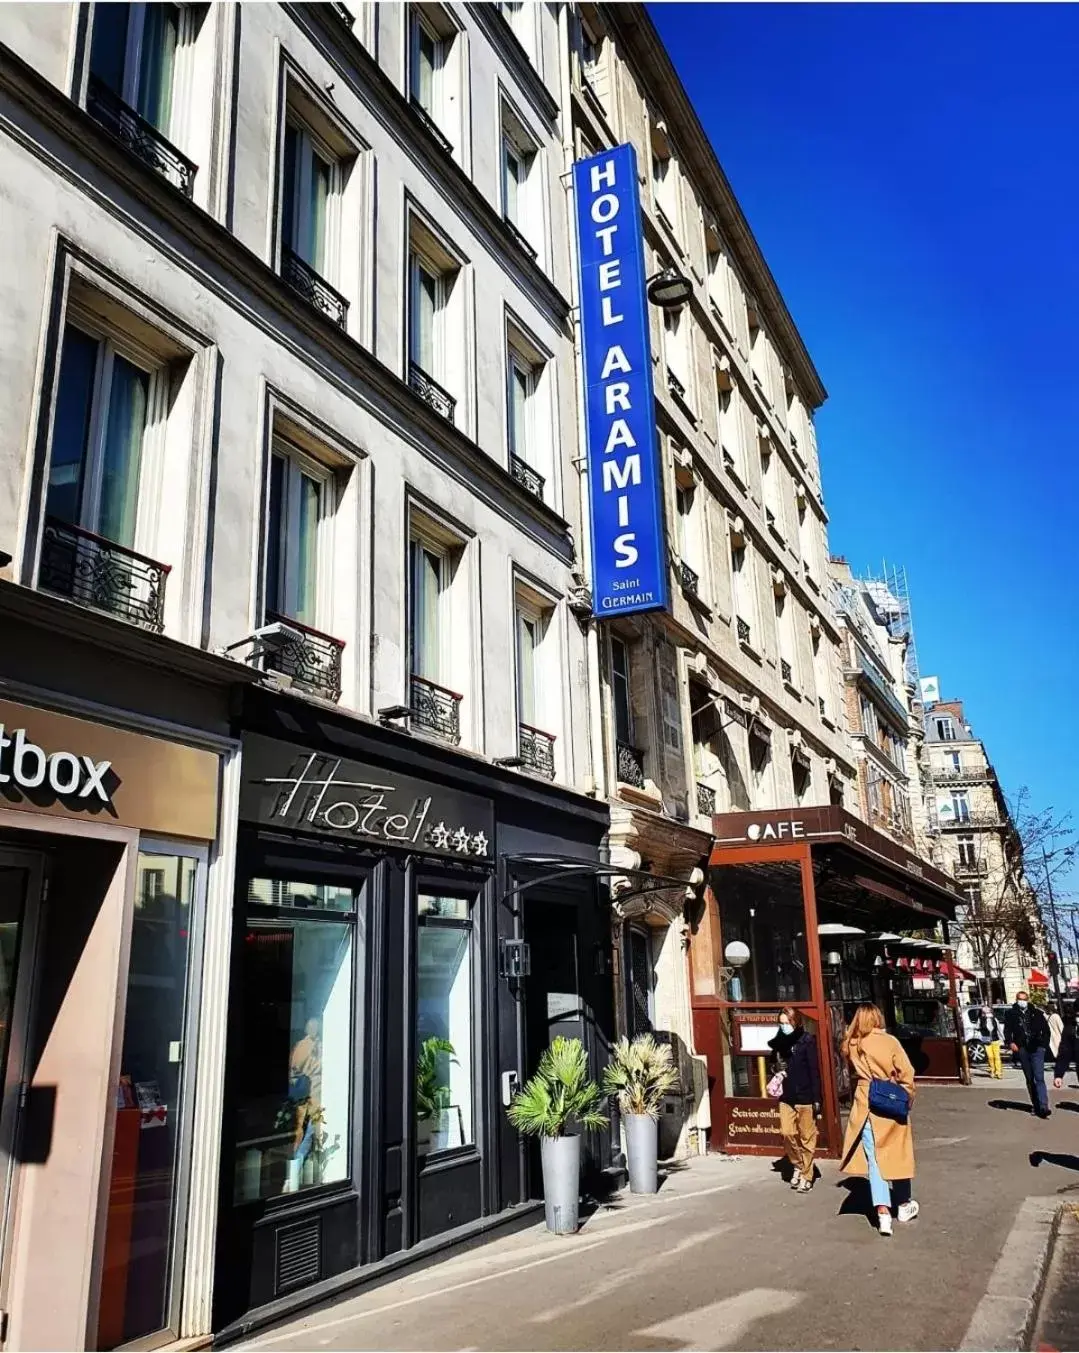 Facade/entrance in Best Western Aramis Saint Germain